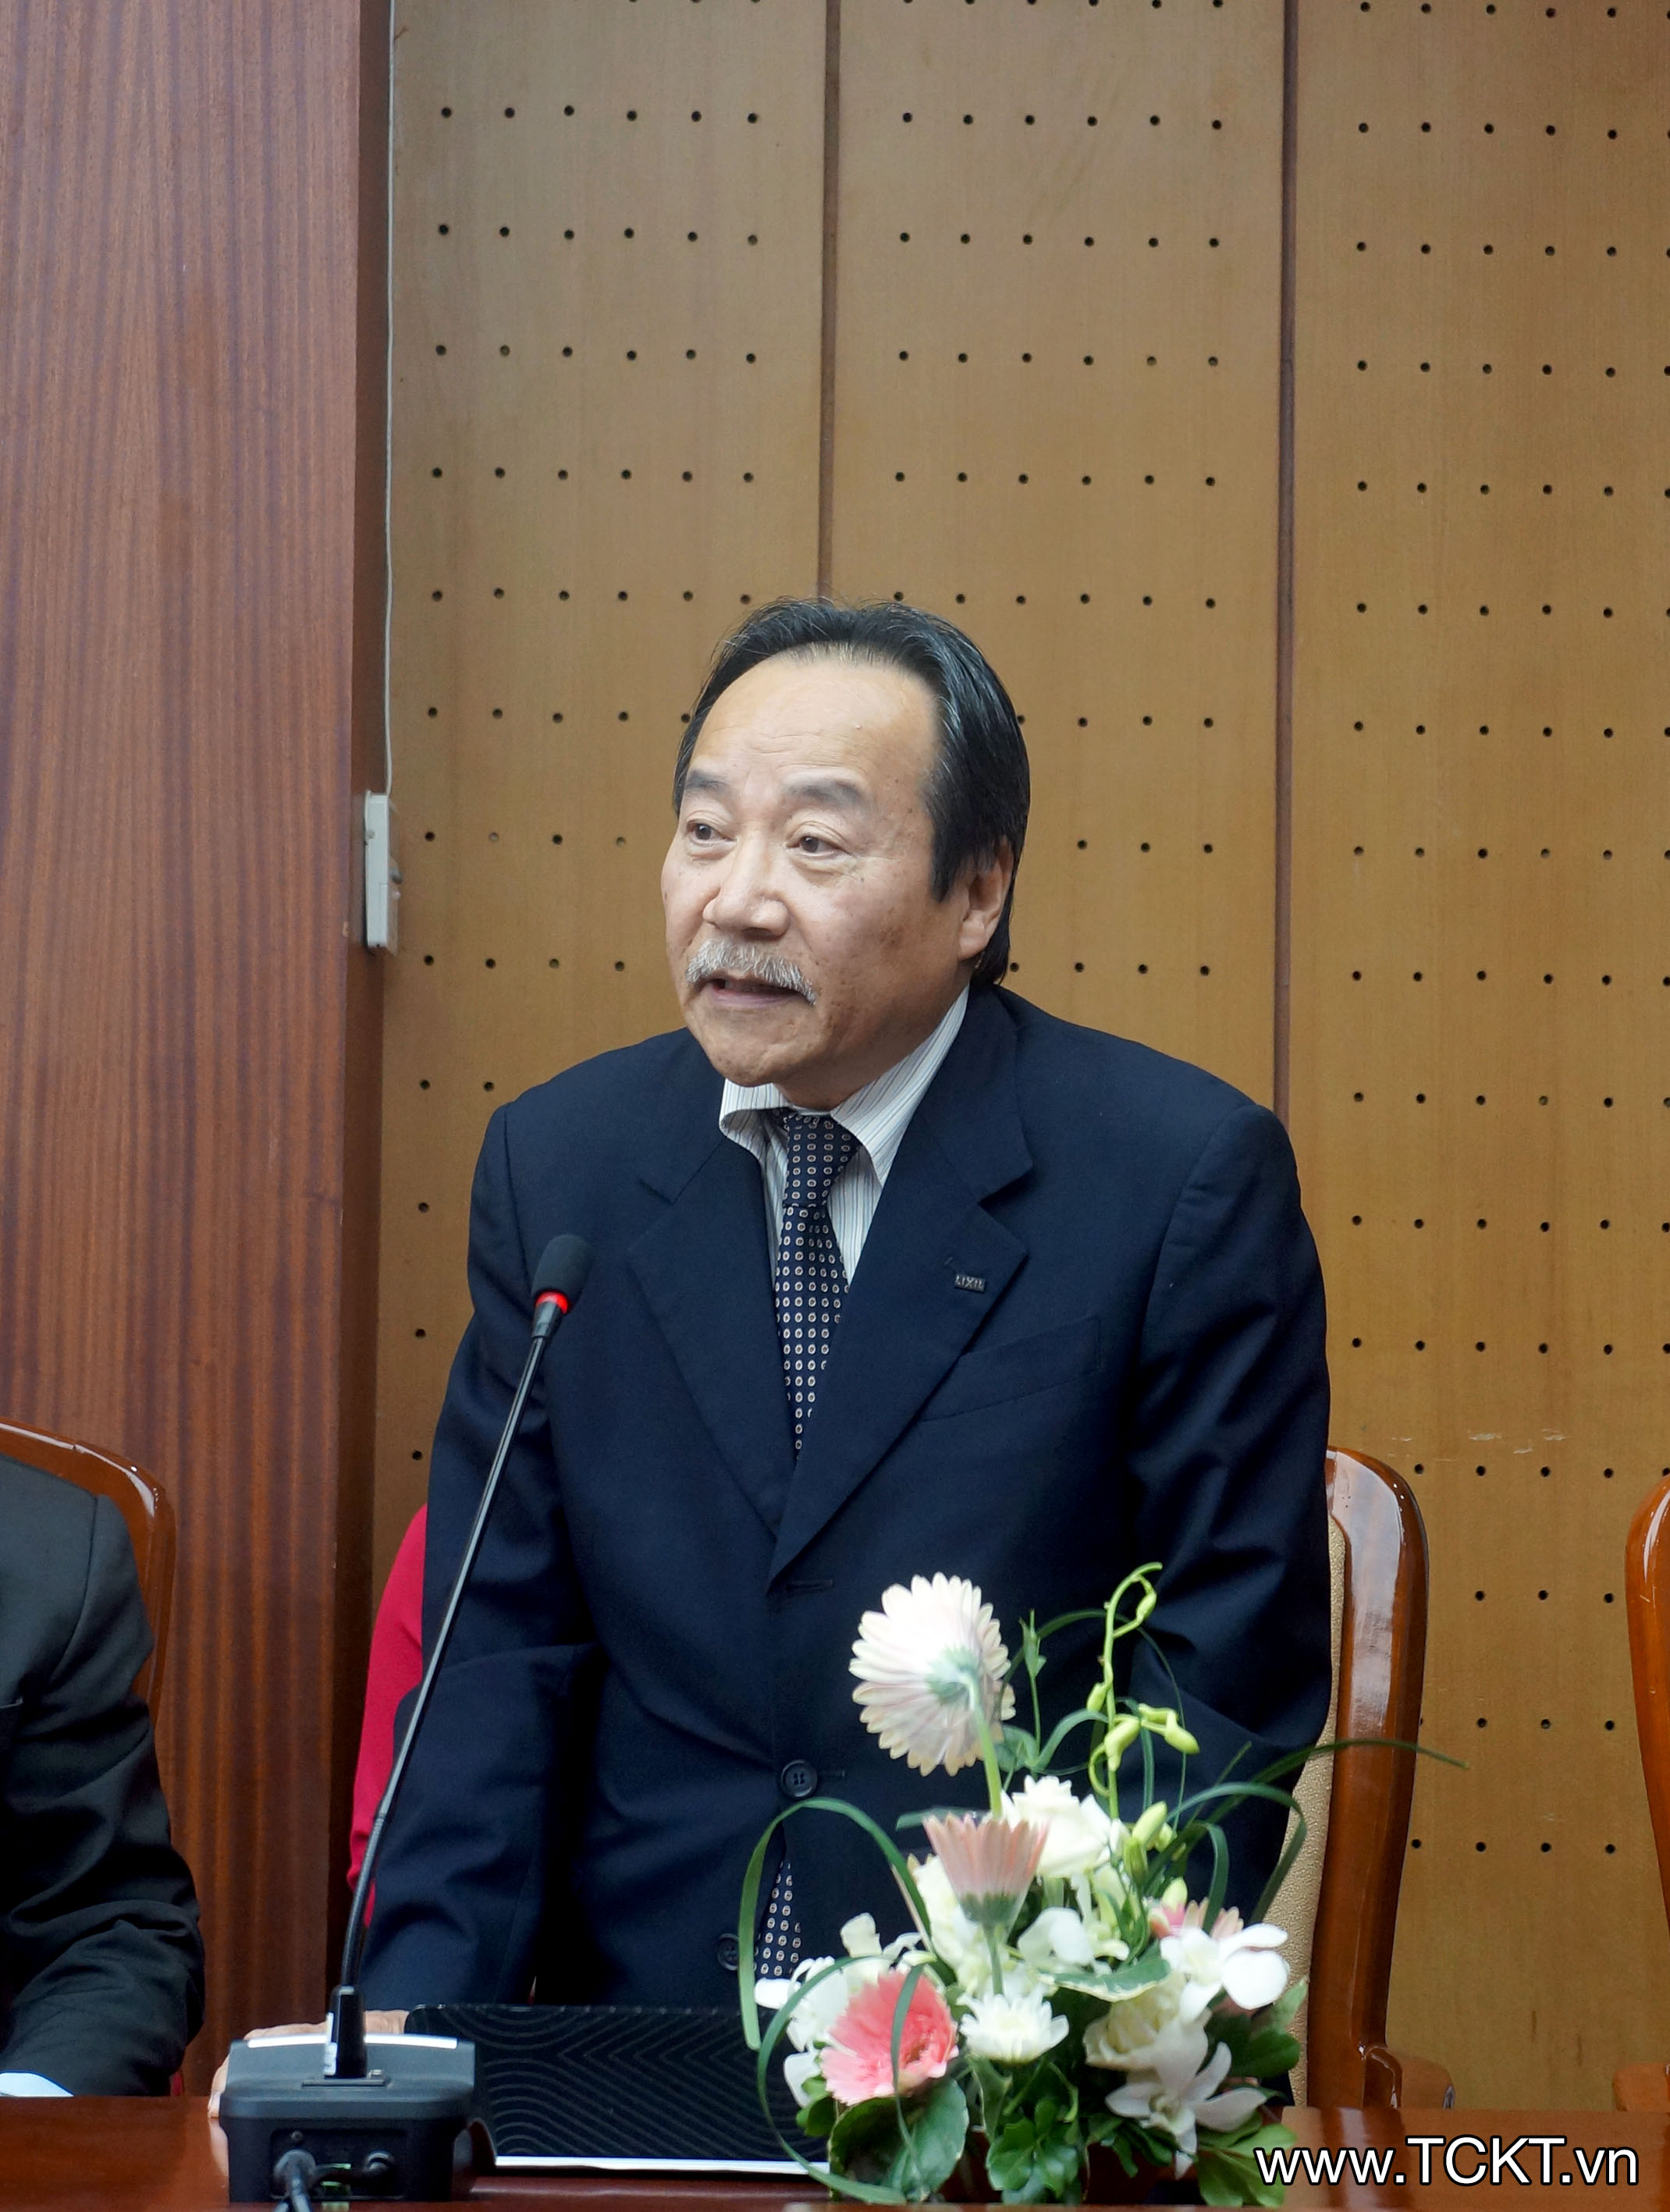 Ông Morita Nguyễn, giám đốc kinh doanh, thành viên Hội đồng quản trị Công ty LIXIL Việt Nam